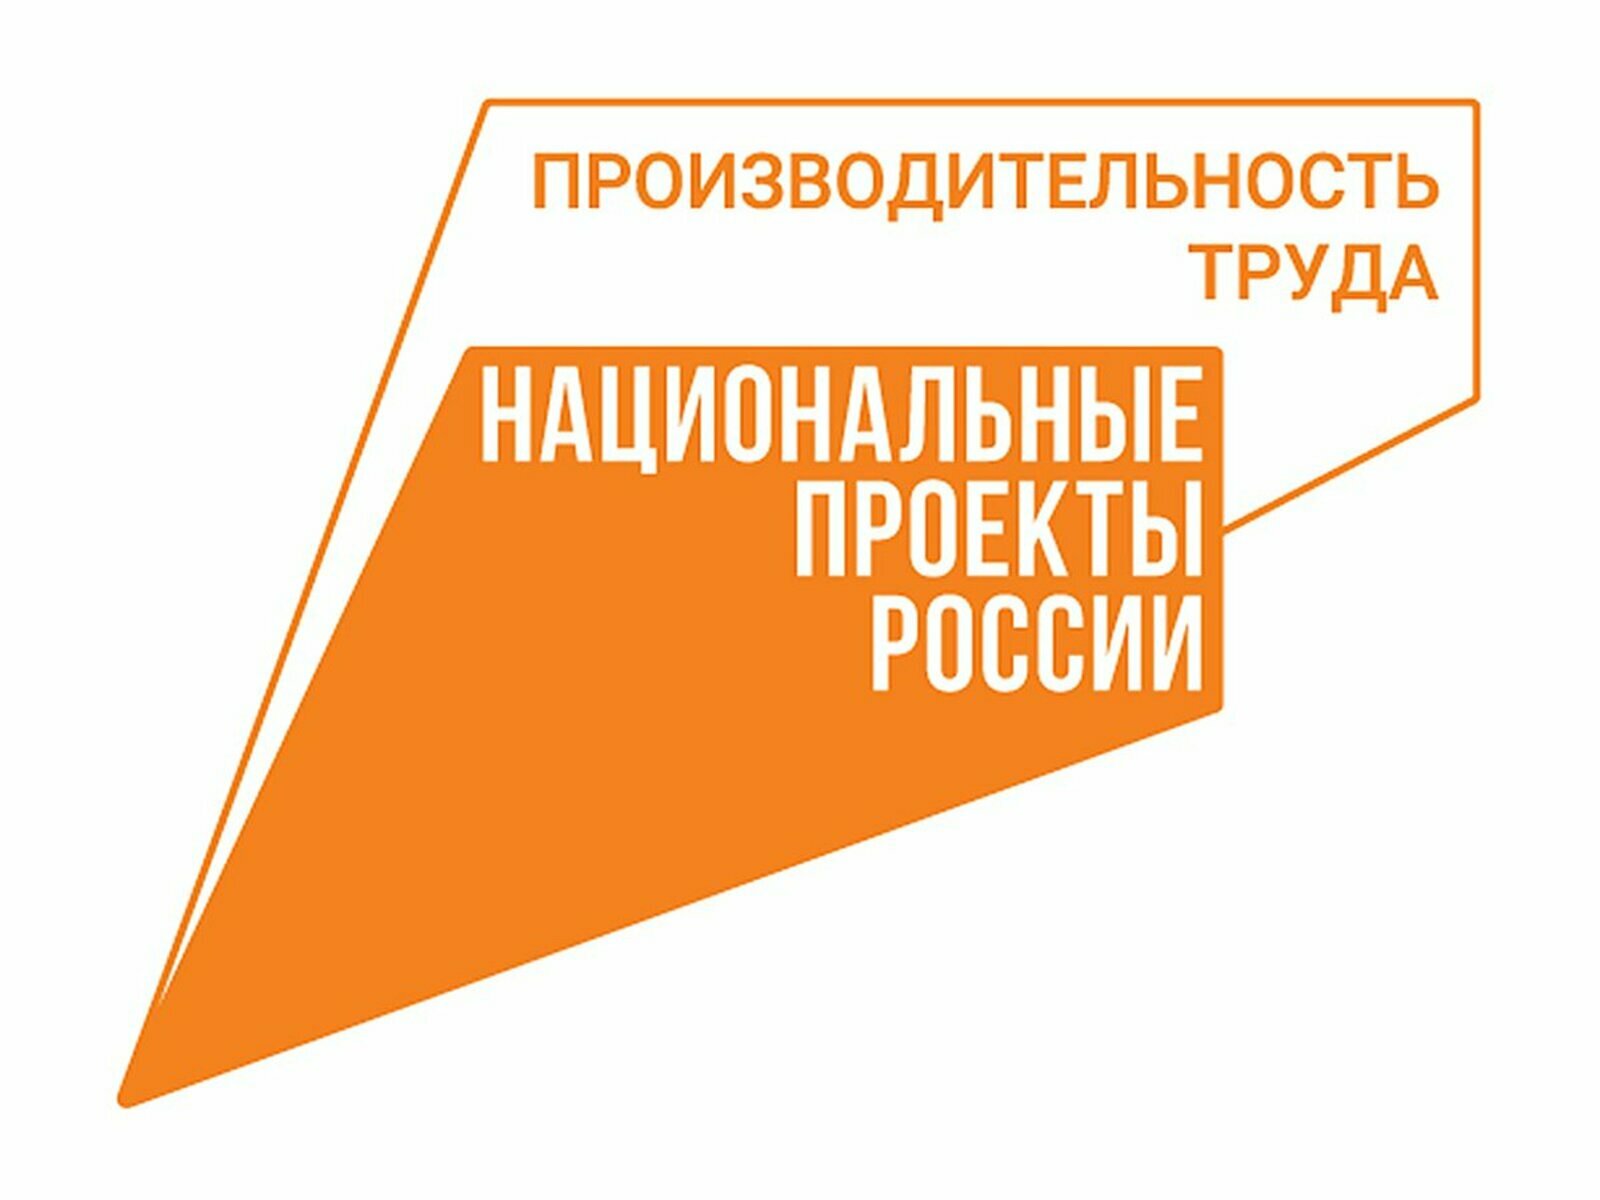 Компании Башкортостана сэкономили 1,7 миллиарда рублей на повышении производительности